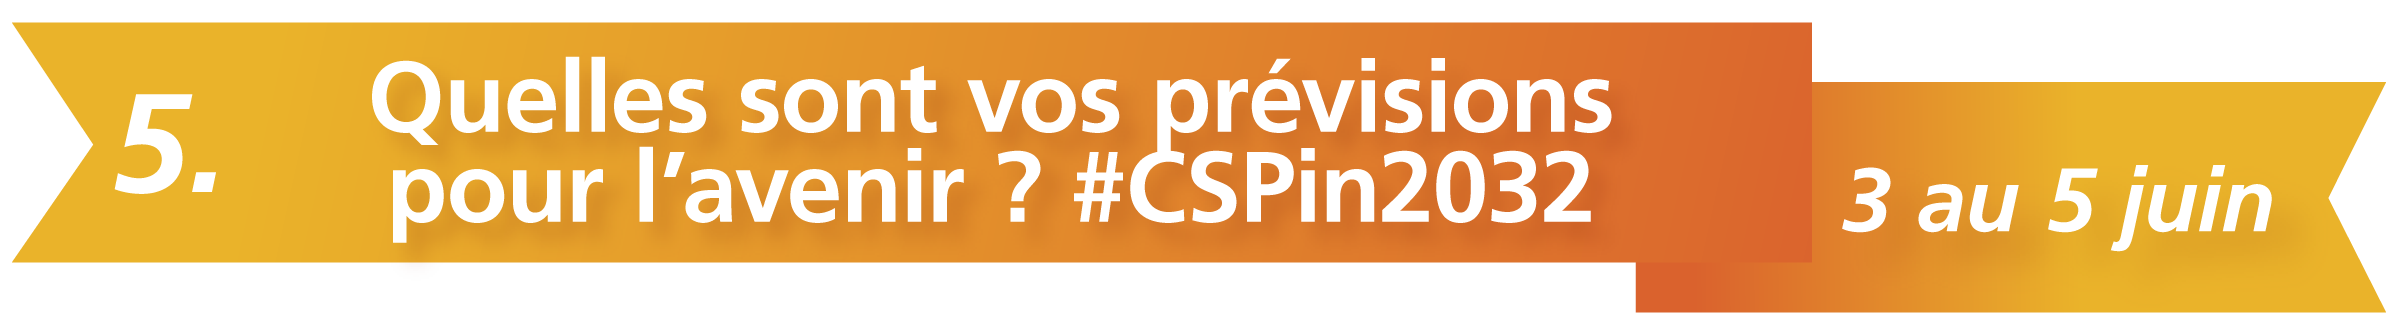 5. Quelles sont vos prévisions pour l’avenir ? #CSPin2032 - 3 au 5 juin